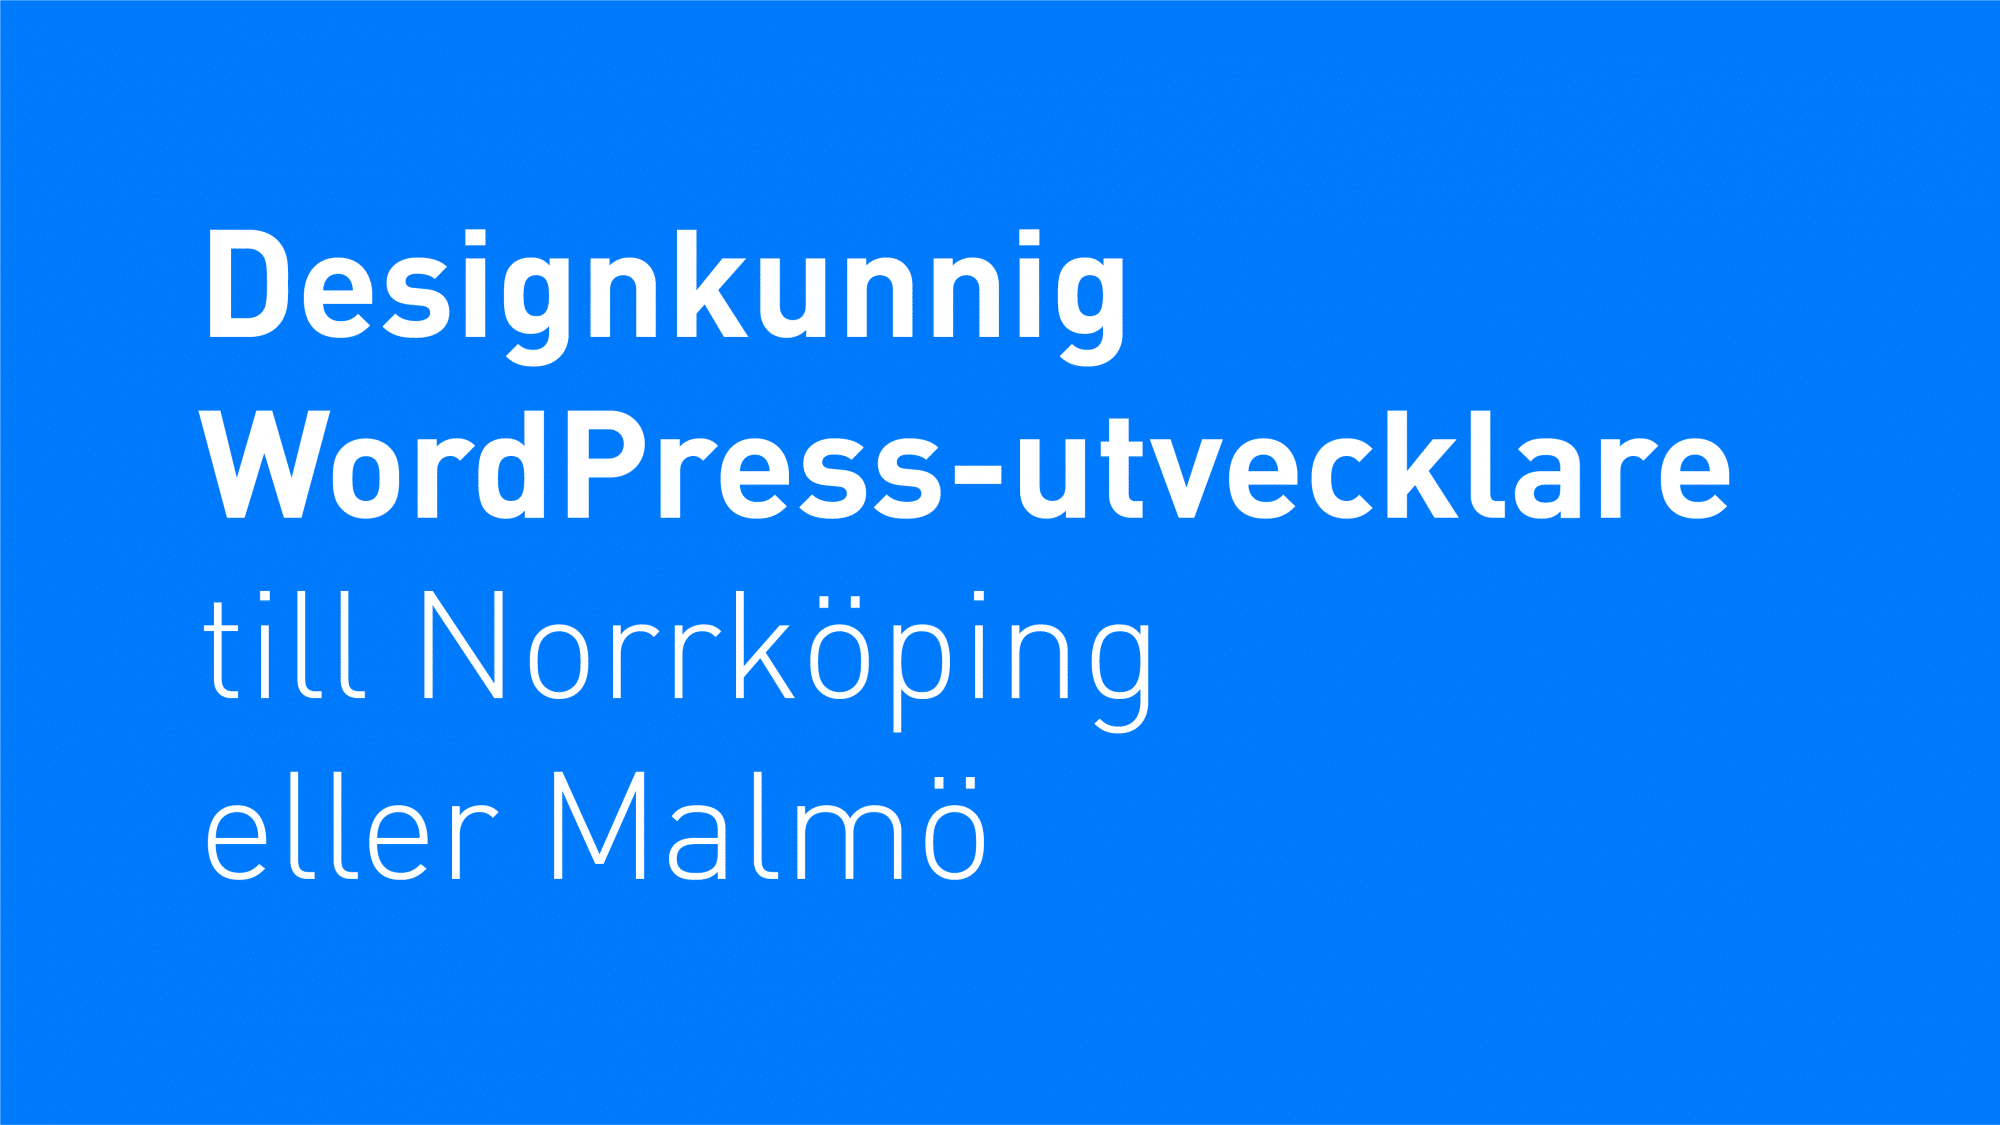 Vit text på blå bakgrund "Designkunnig WordPress-utvecklare till Norrköping eller Malmö"